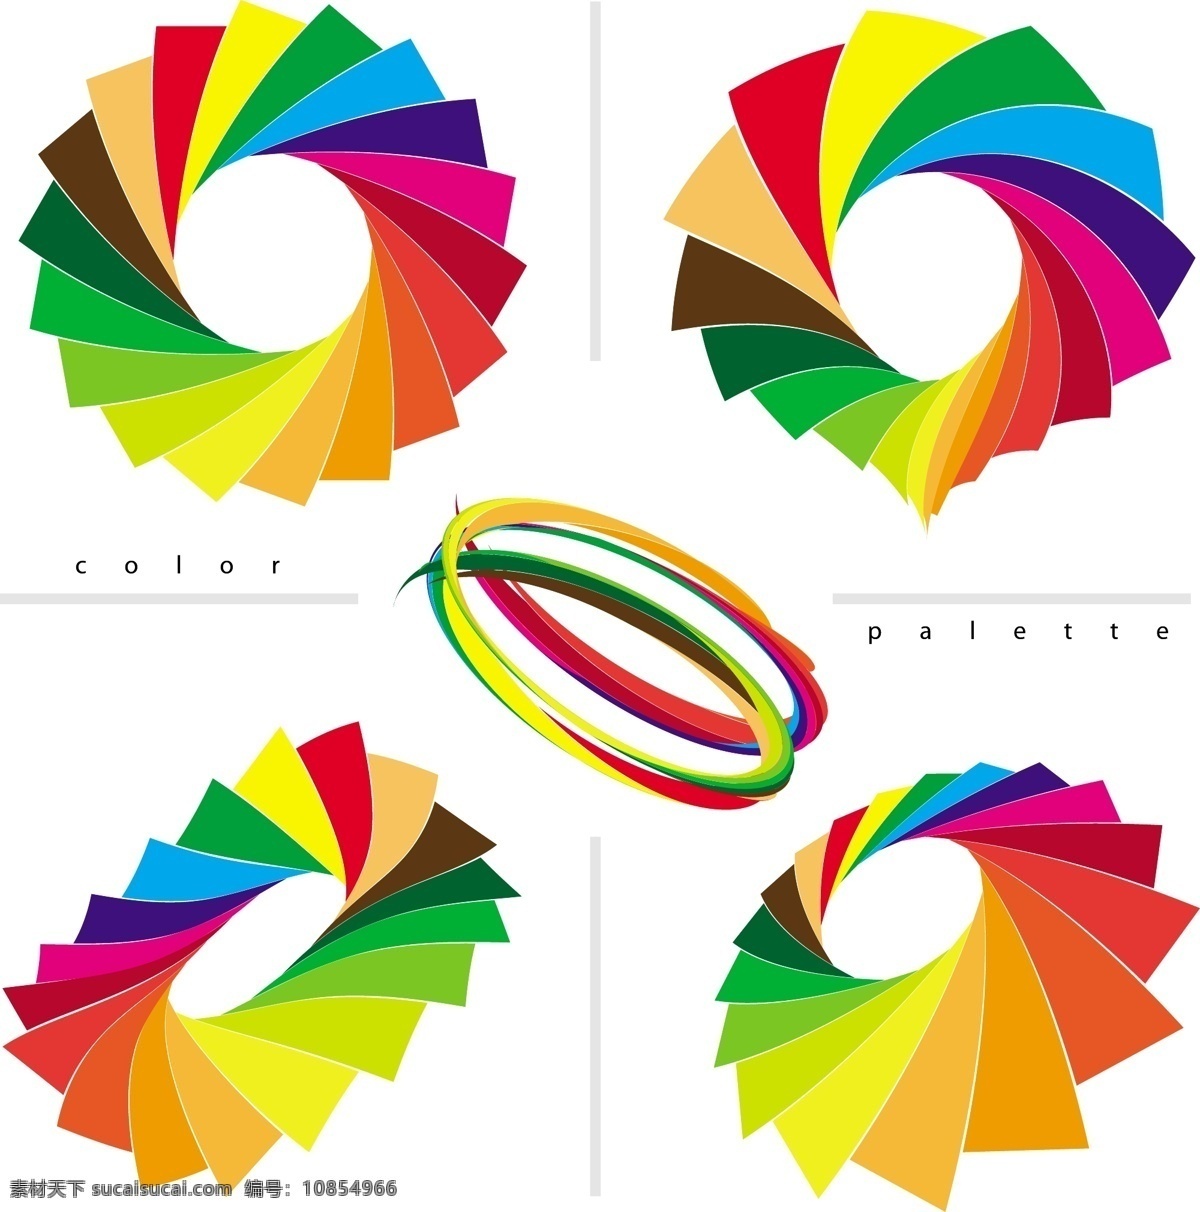 七彩漩涡 漩涡 彩虹 色彩 七彩 彩纸 环 其他矢量 矢量素材 矢量图库